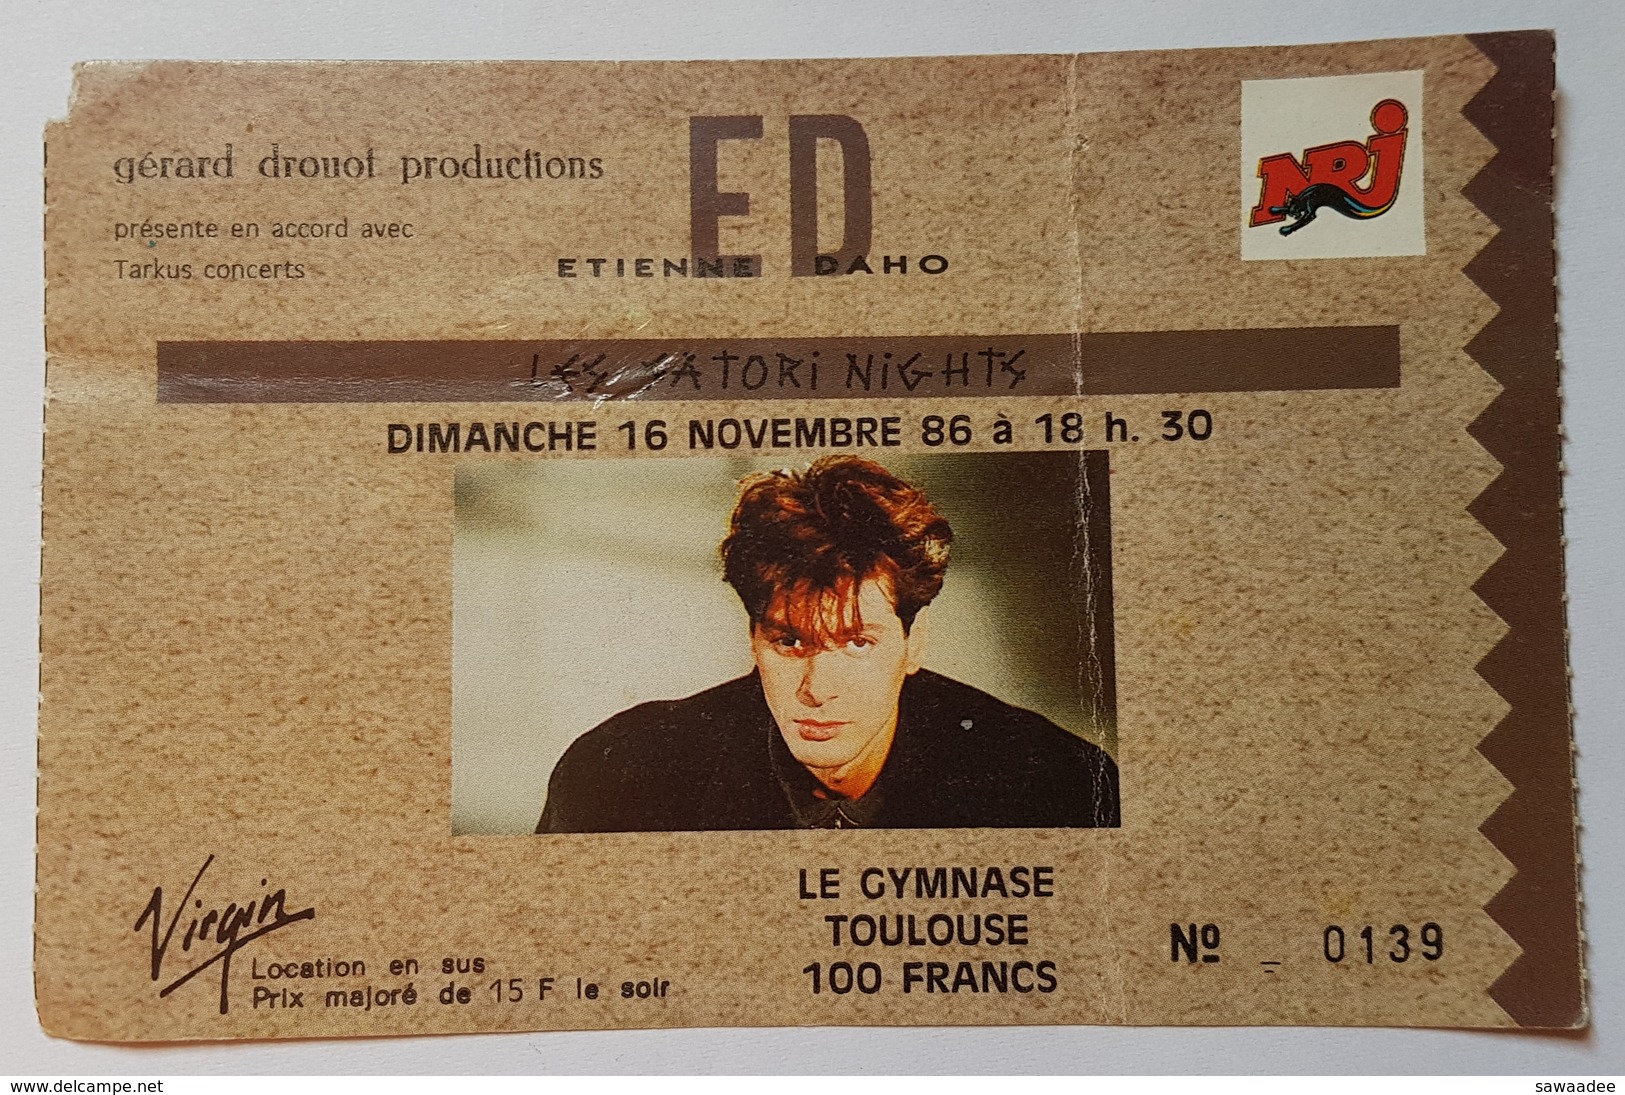 BILLET DE CONCERT - ETIENNE DAHO - 16/11/1986 - NRJ - VIRGIN - LE GYMNASE - TOULOUSE - GERARD DROUOT PRODUCTIONS - Tickets De Concerts